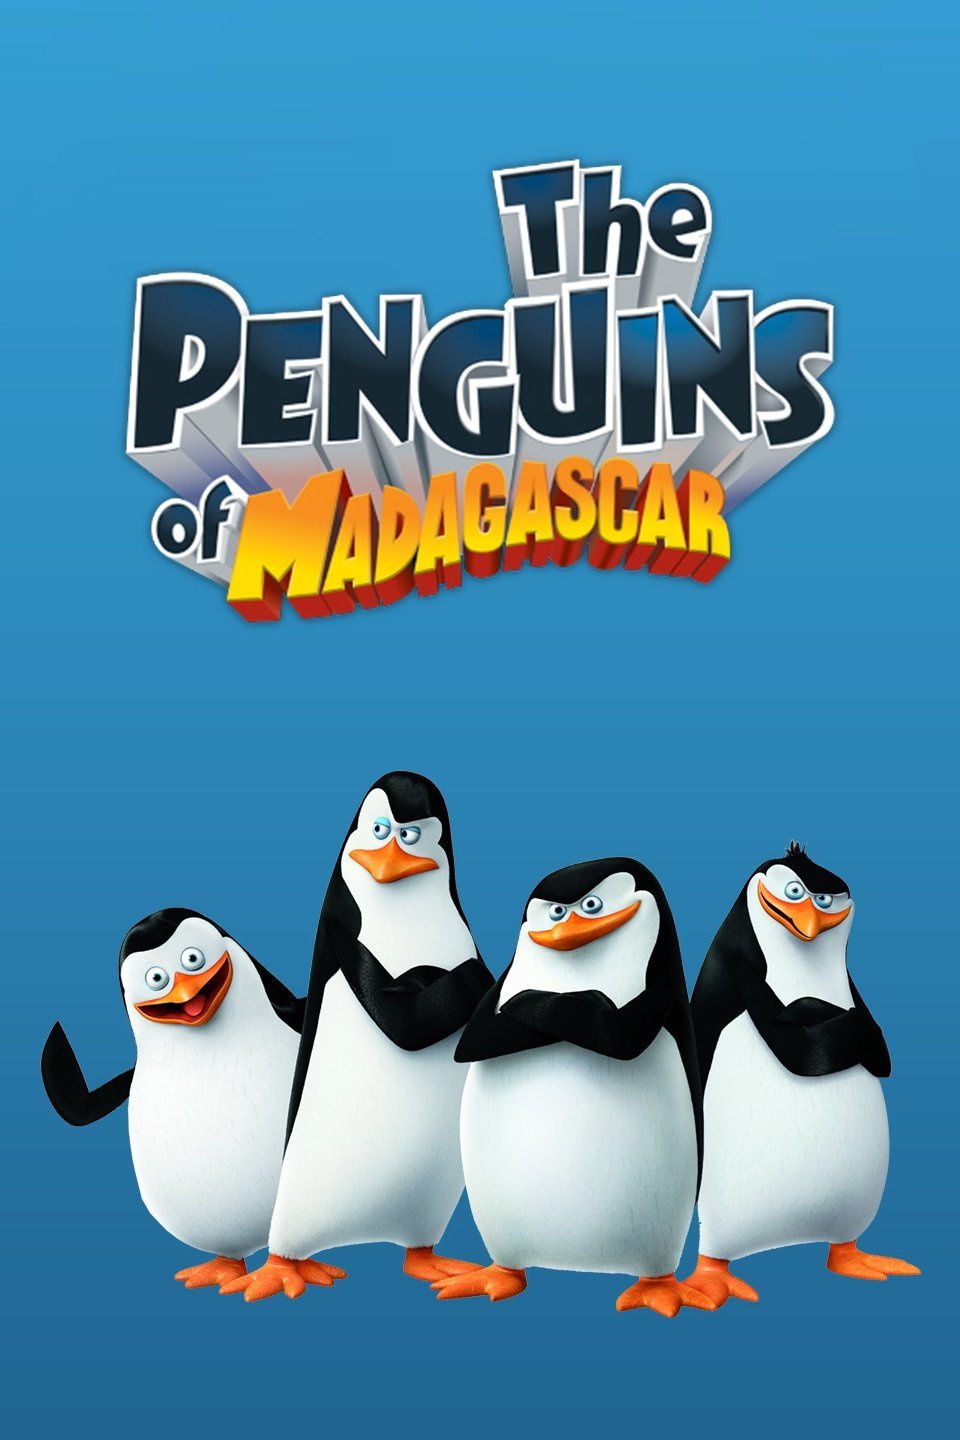 Madagascar penguin